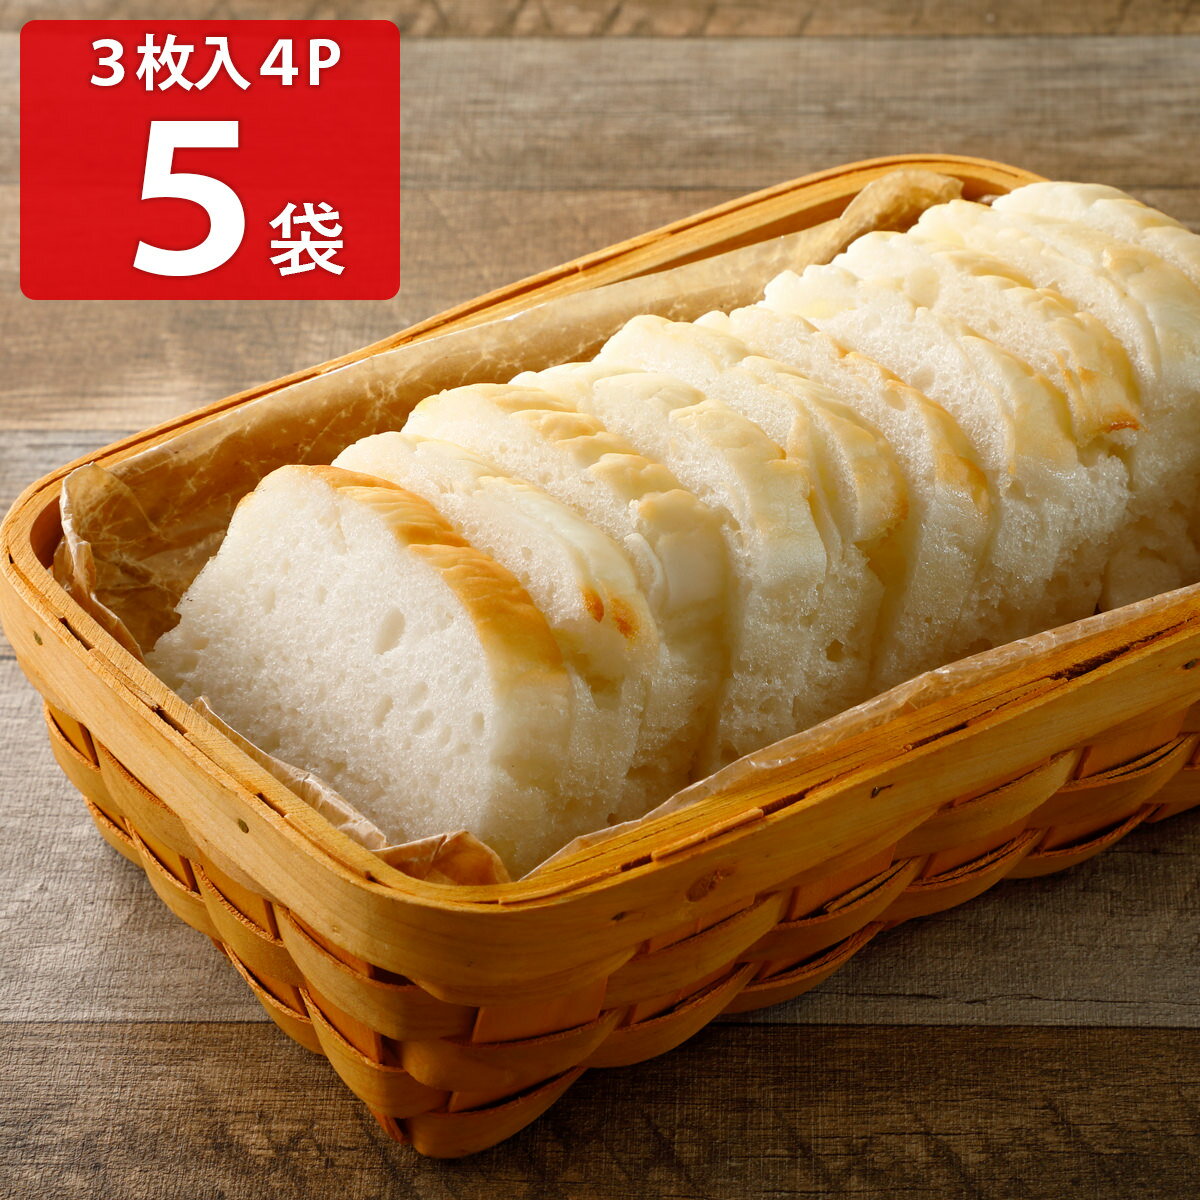 【10 割引】みんなの食卓 お米で作ったしかくいパン 3枚入4袋5パックセット パン グルテンフリー 米粉パン 食パン冷凍パン アレルギー対応 お米パン 個包装